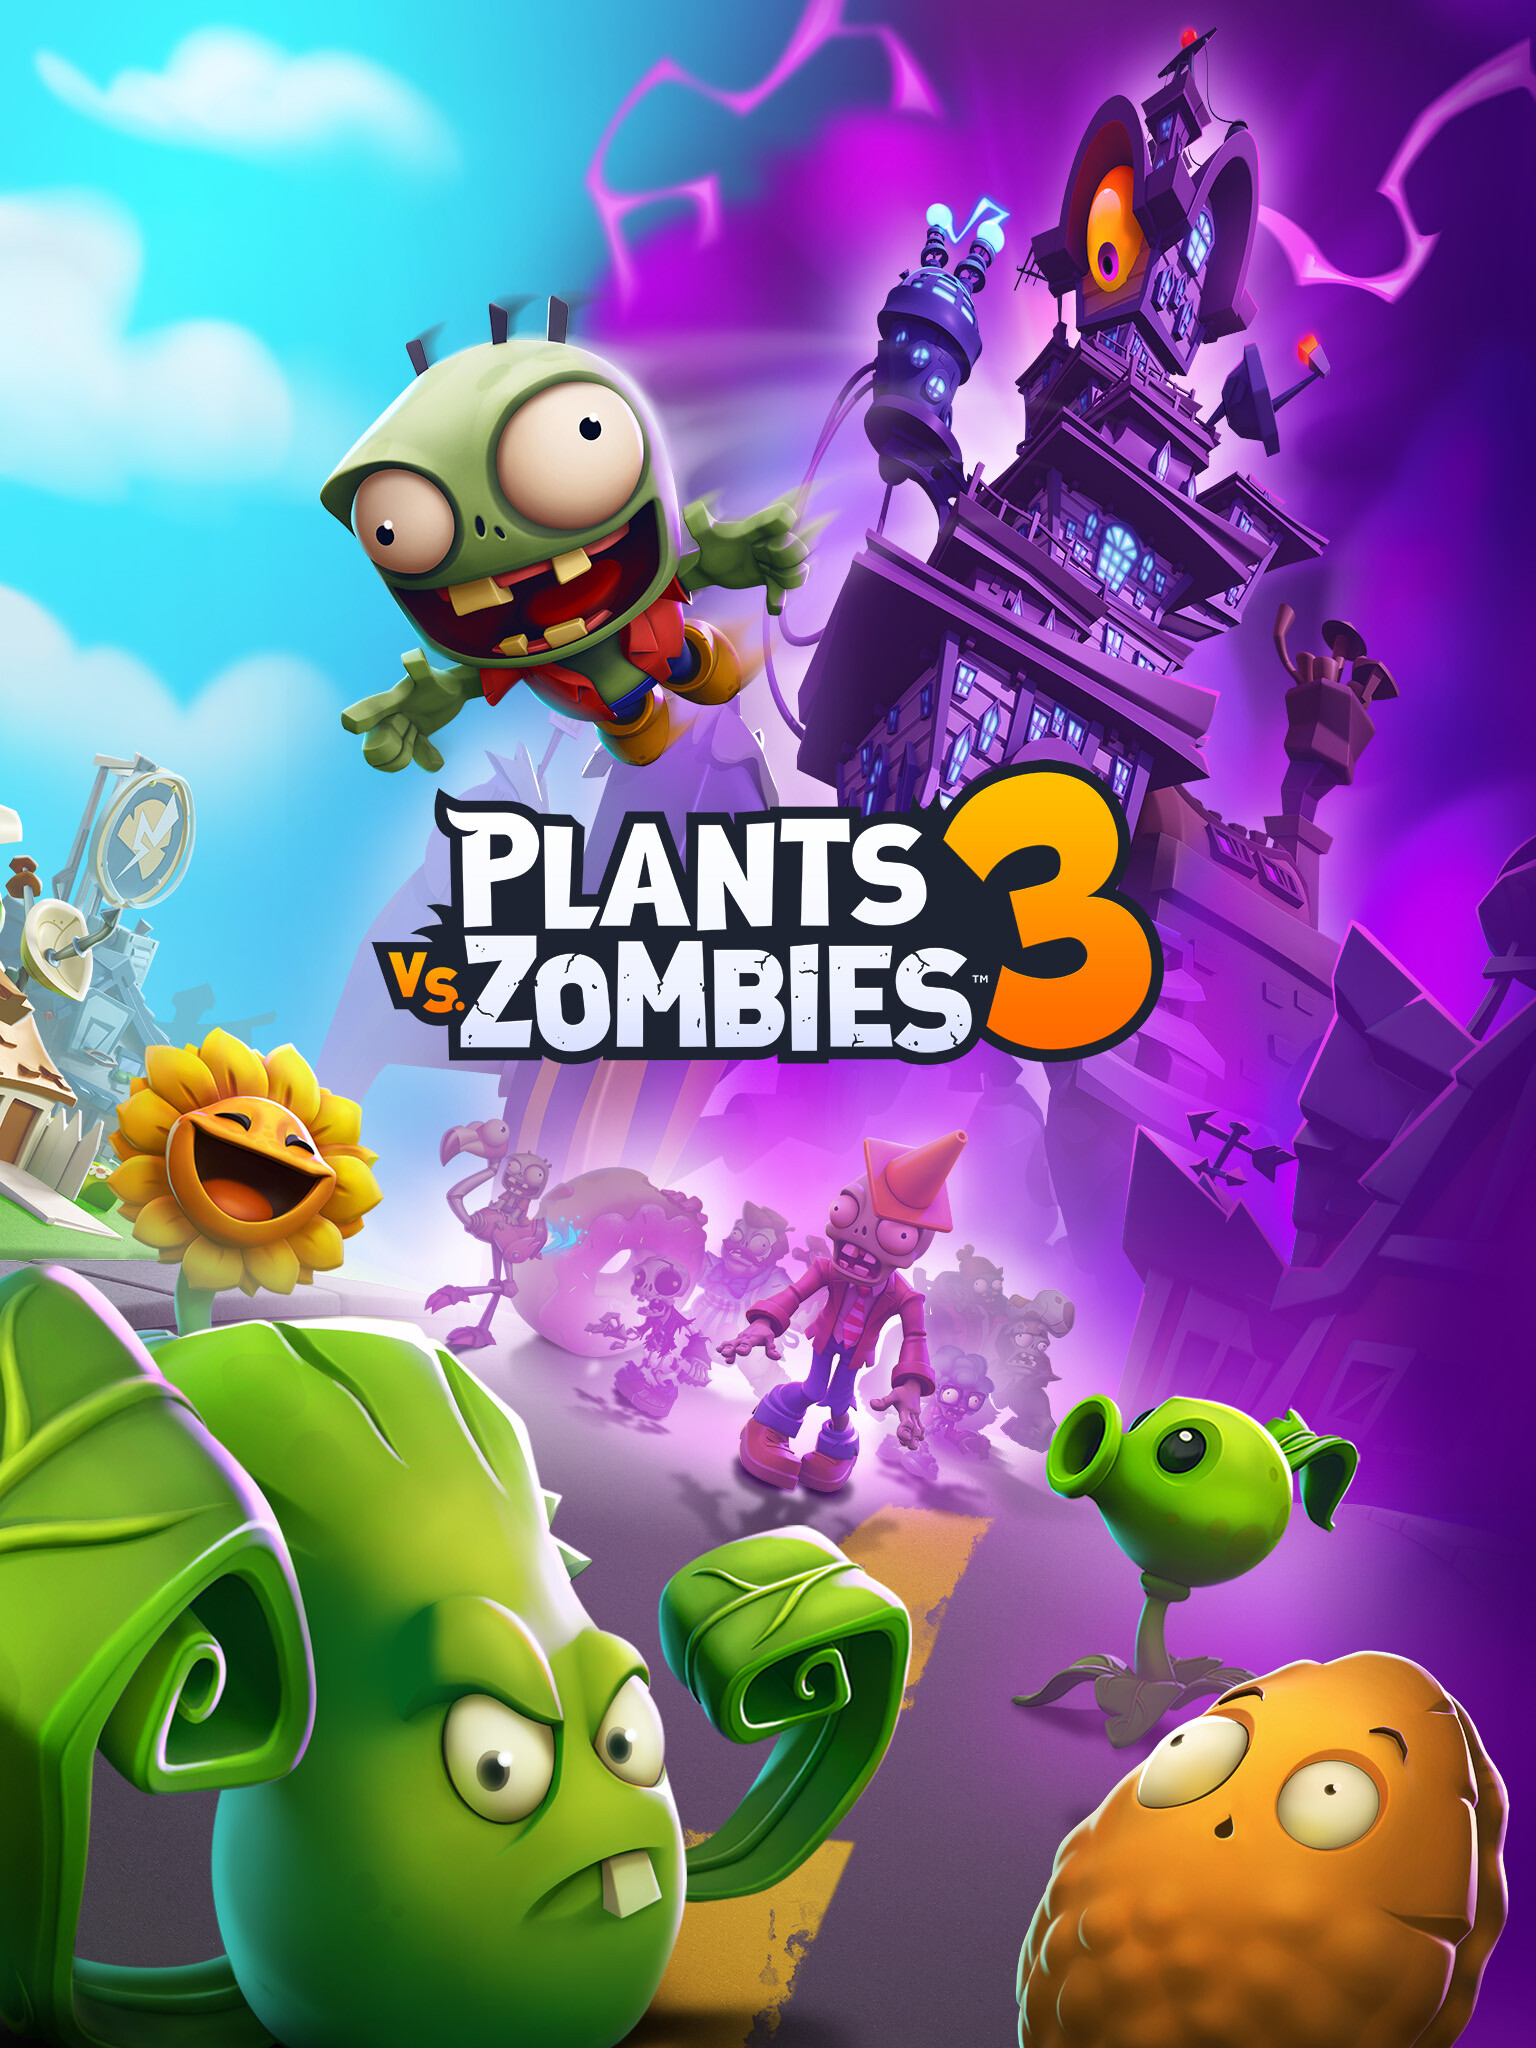 ArtStation - Plants vs Zombies 3: Combat Boards